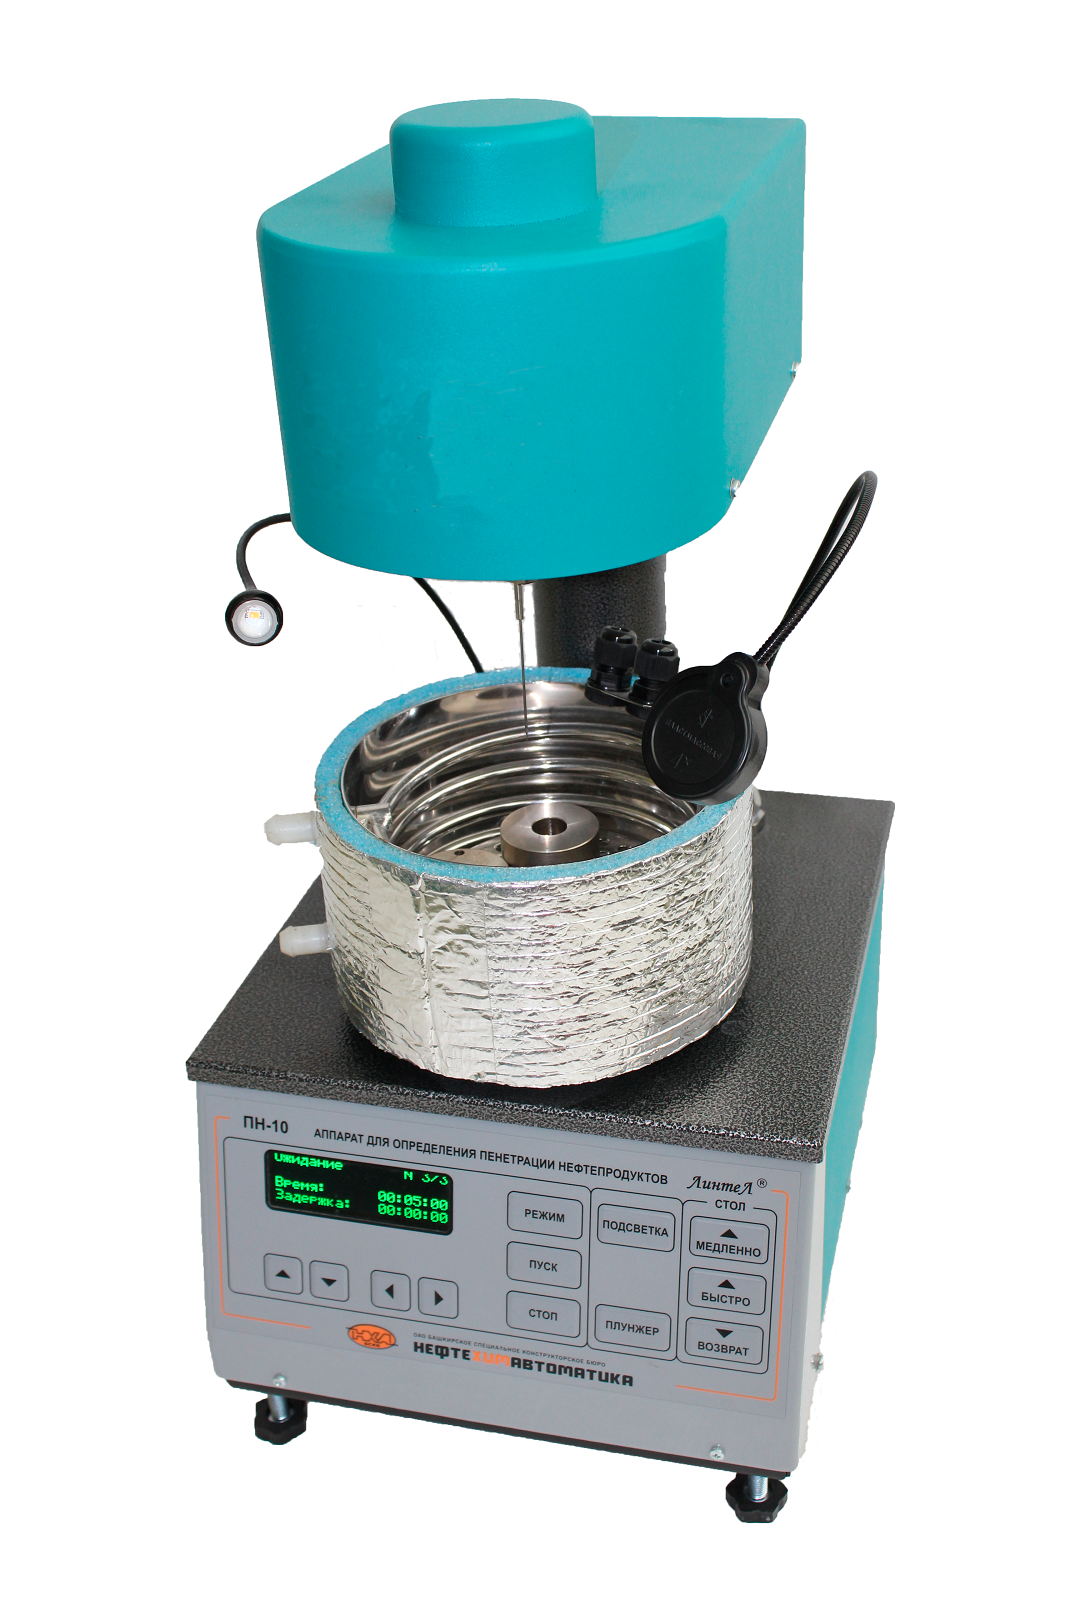 جهاز لتحديد مرونة المواد المانعة للتسرب الساخنة المطبقة LinteL PN-10 (مجموعة GR)